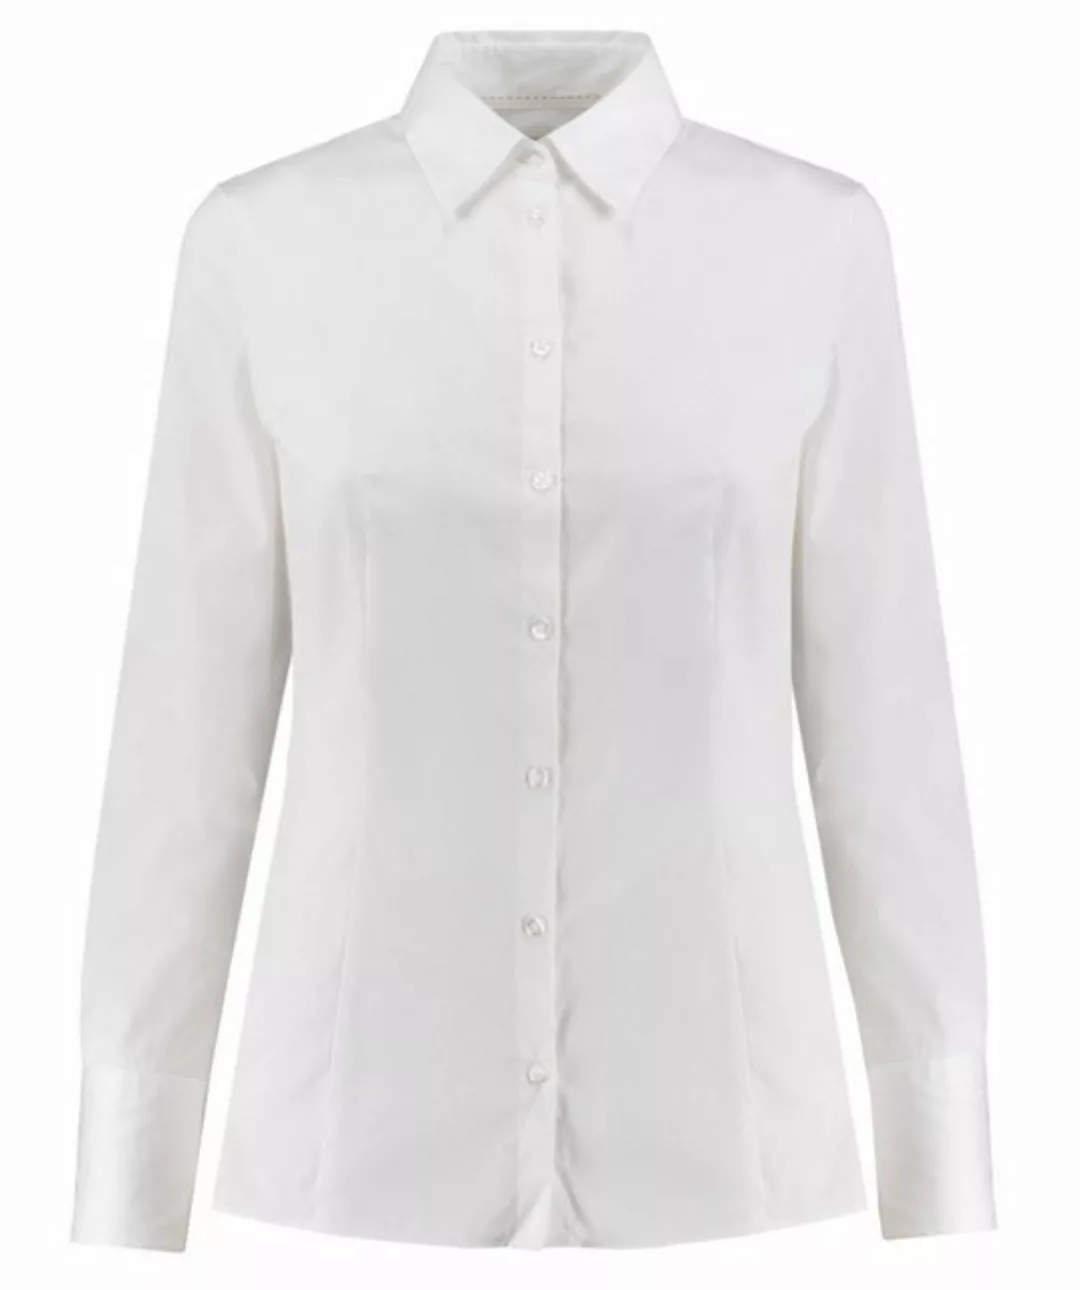 HUGO Klassische Bluse Damen Bluse THE FITTED SHIRT bügelleicht Slim Fit (1- günstig online kaufen